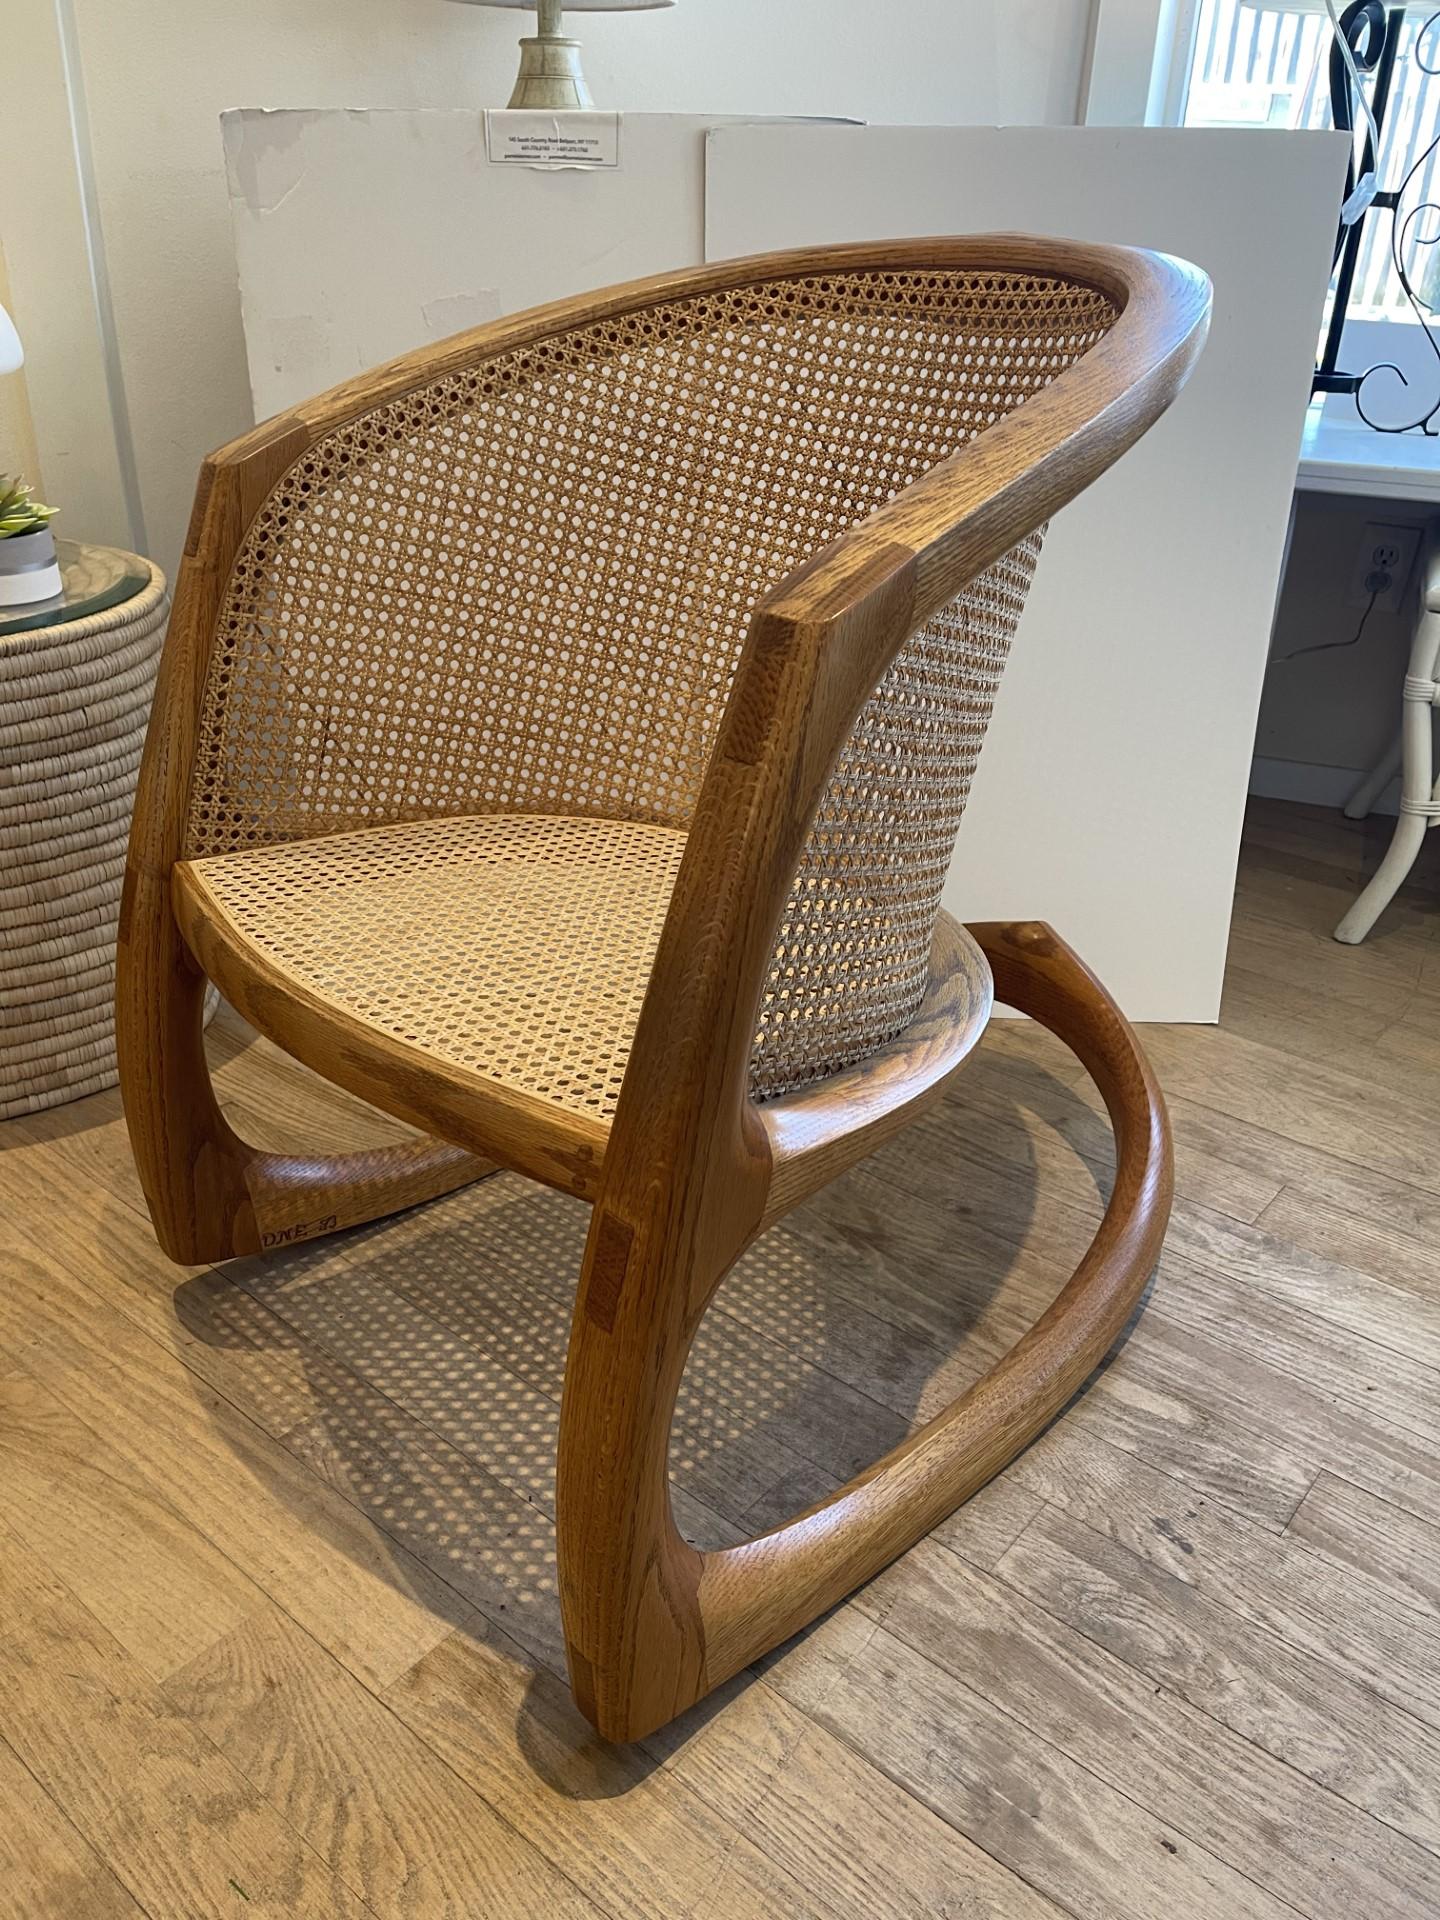 Le fauteuil à bascule Sternum, conçu par le Studio Craftsman de renommée internationale &  Design/One 1983.
 Le Rocking Chair d'Ebner s'inspire de l'os du sternum du canard, structurellement solide et artistiquement formé.
Il existe de nombreuses